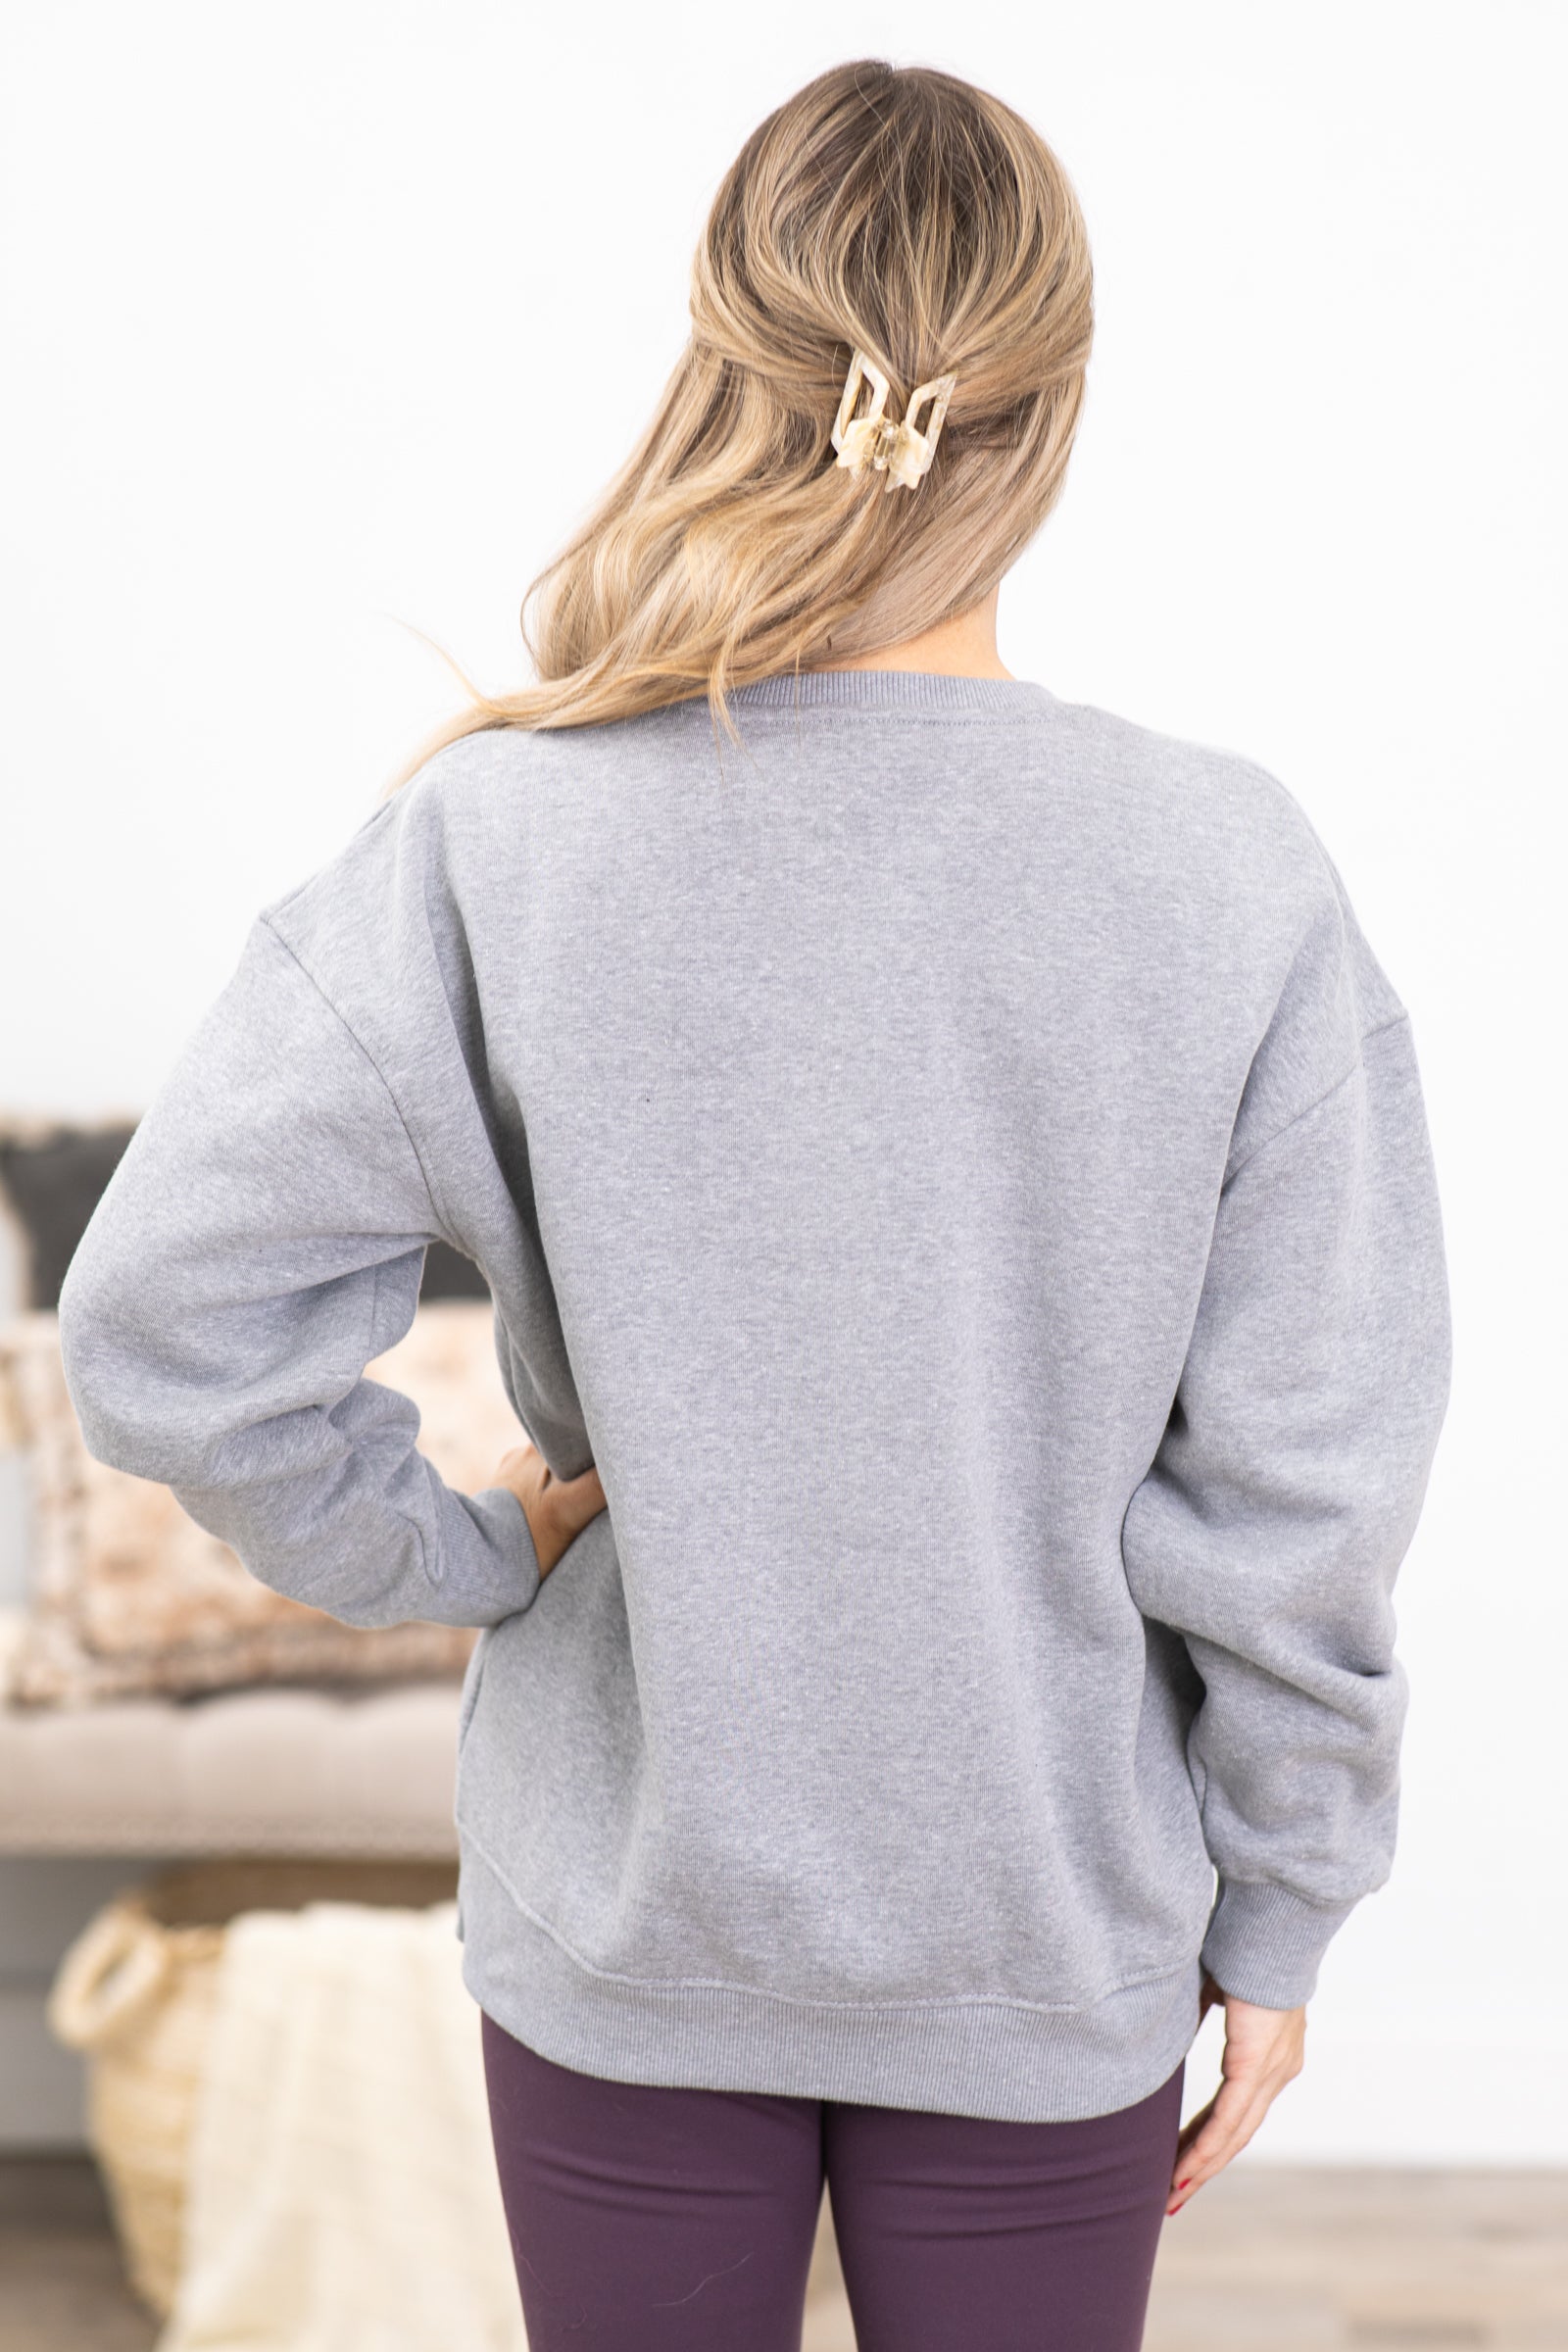 Heather Grey Oversized Fleece Sweatshirt Top